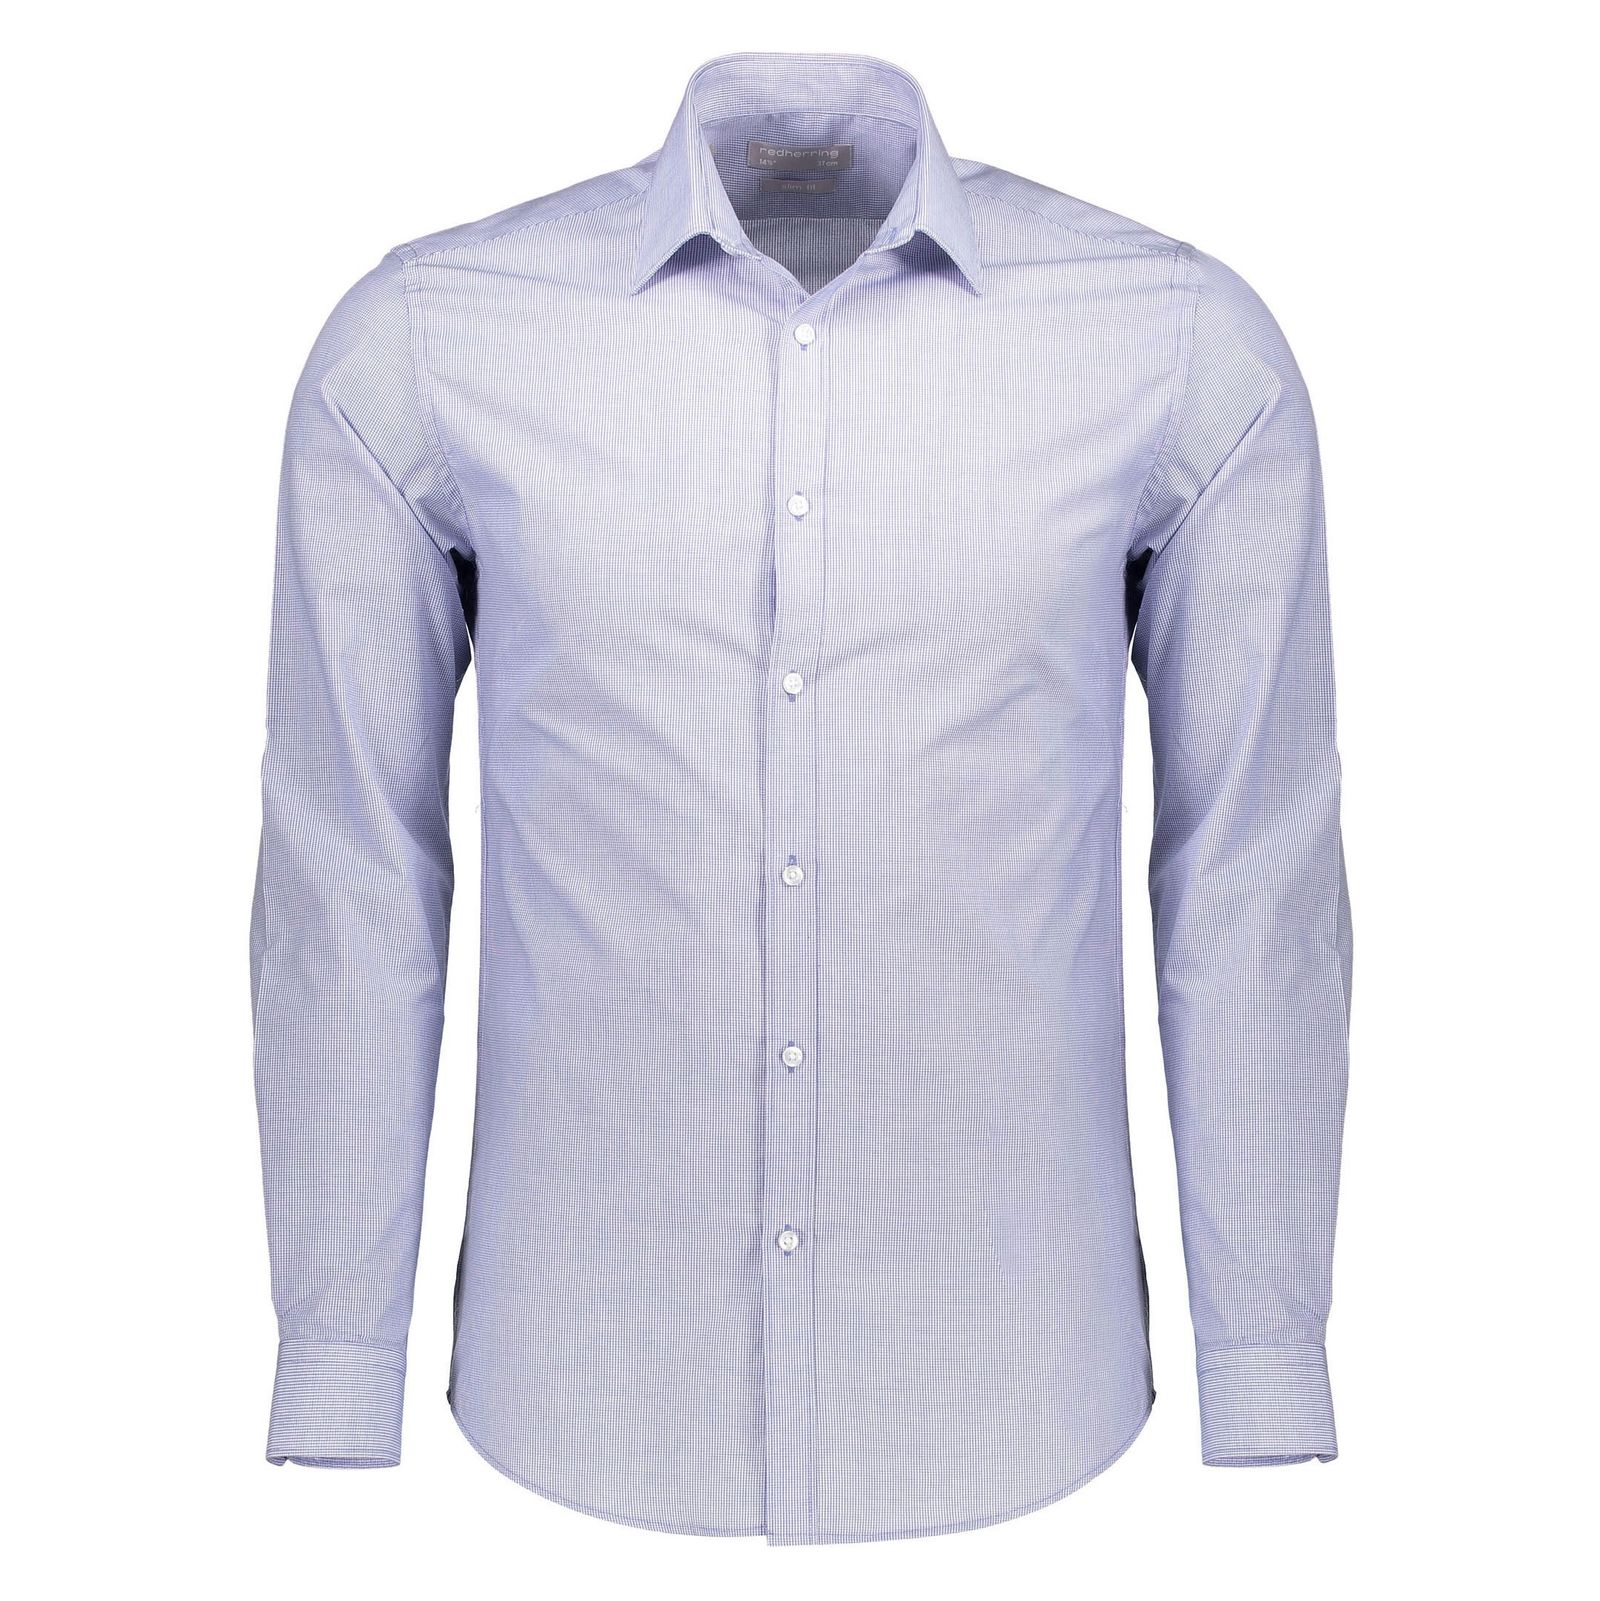 پیراهن رسمی مردانه - رد هرینگ - آبي روشن - 1